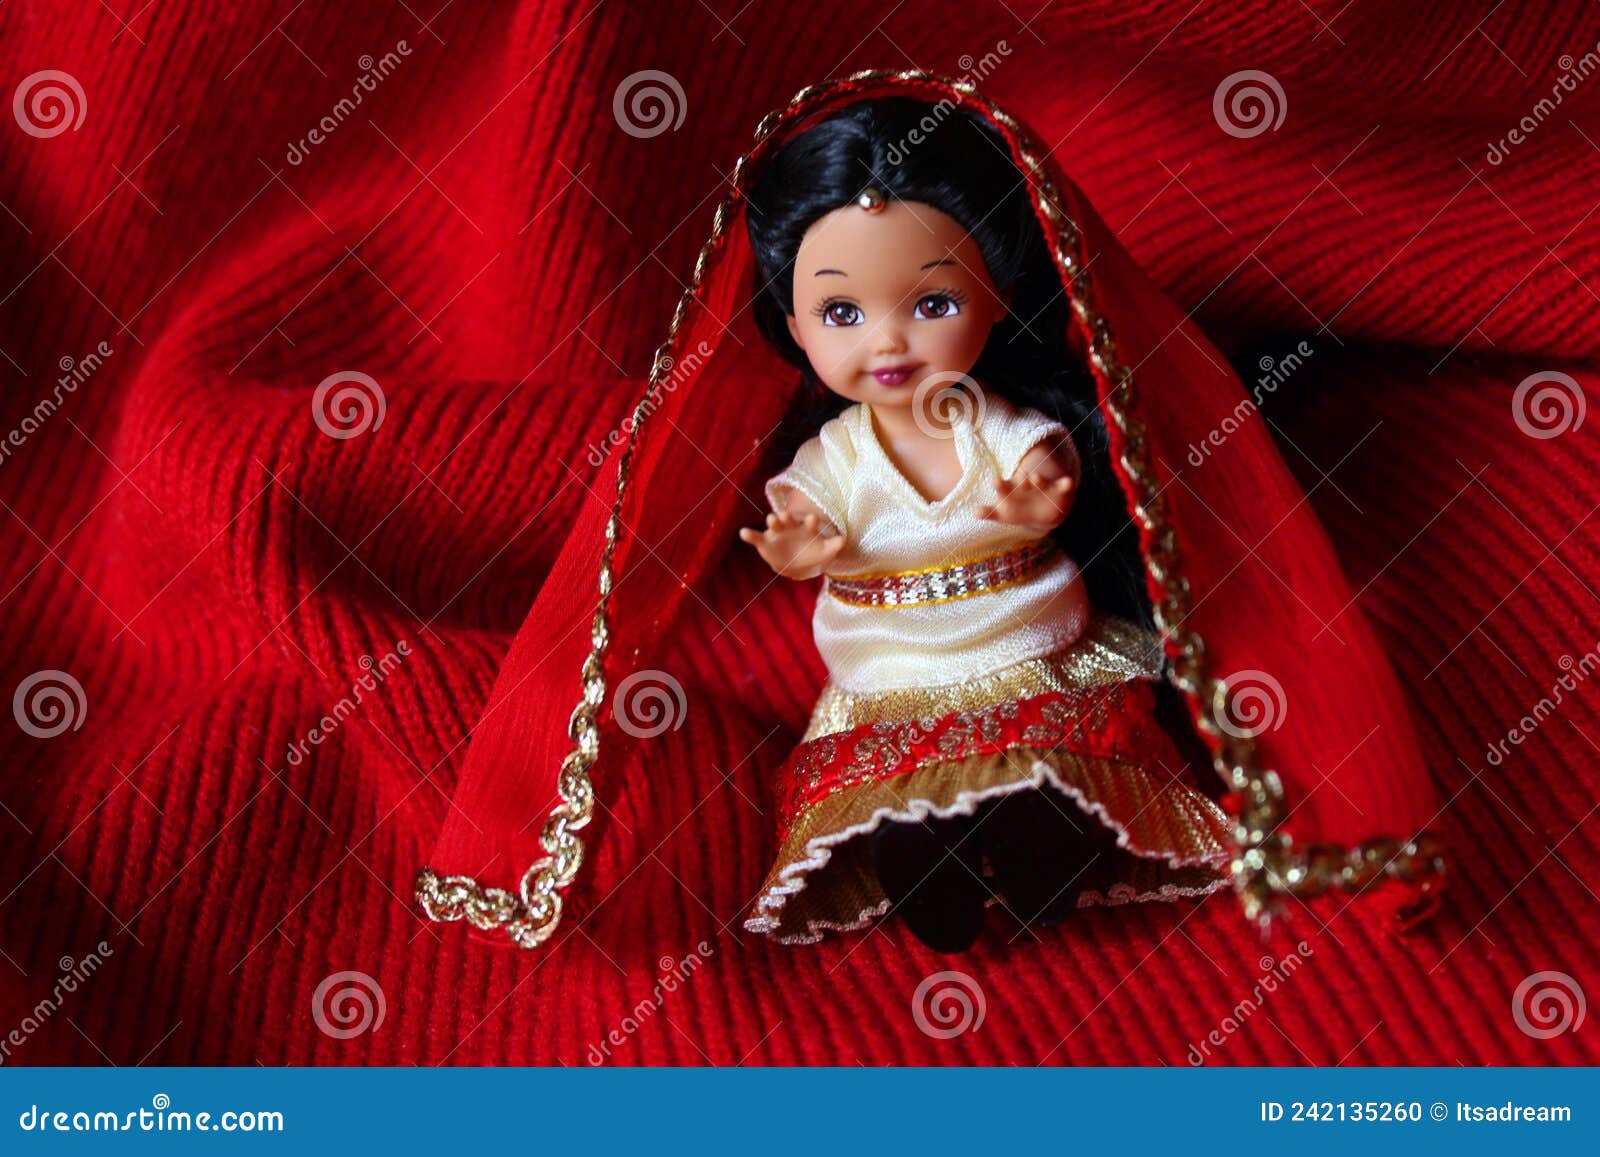 Bonecas barbie em vestidos tradicionais de índios afro-americanos